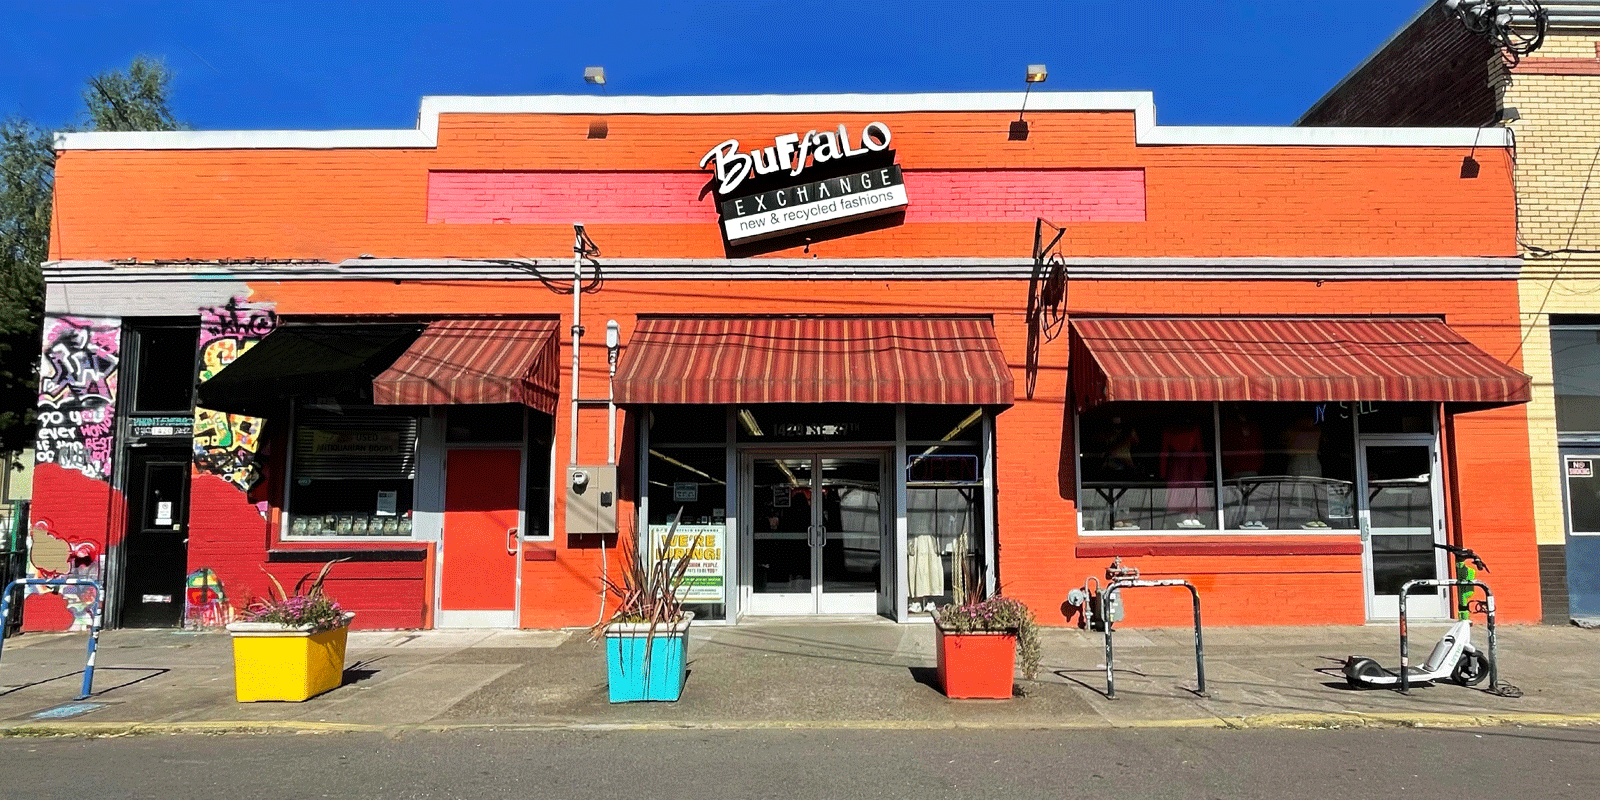 Exterior of Buffalo Exchange Portland, Hawthorne 